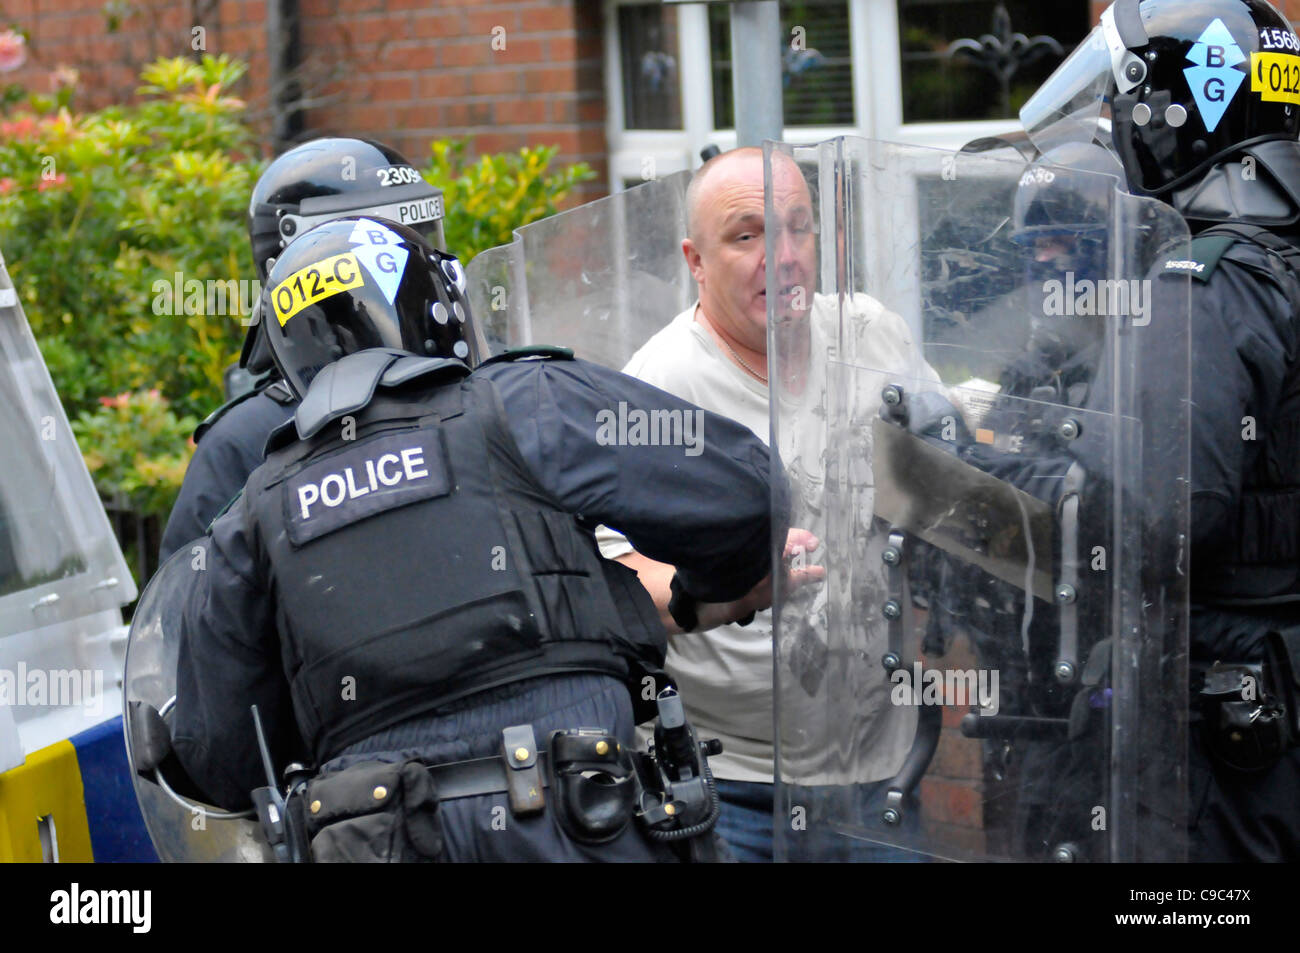 PSNI ufficiali arrestato un uomo nel corso di disordini nel Bogside, Londonderry, Irlanda del Nord. Foto Stock